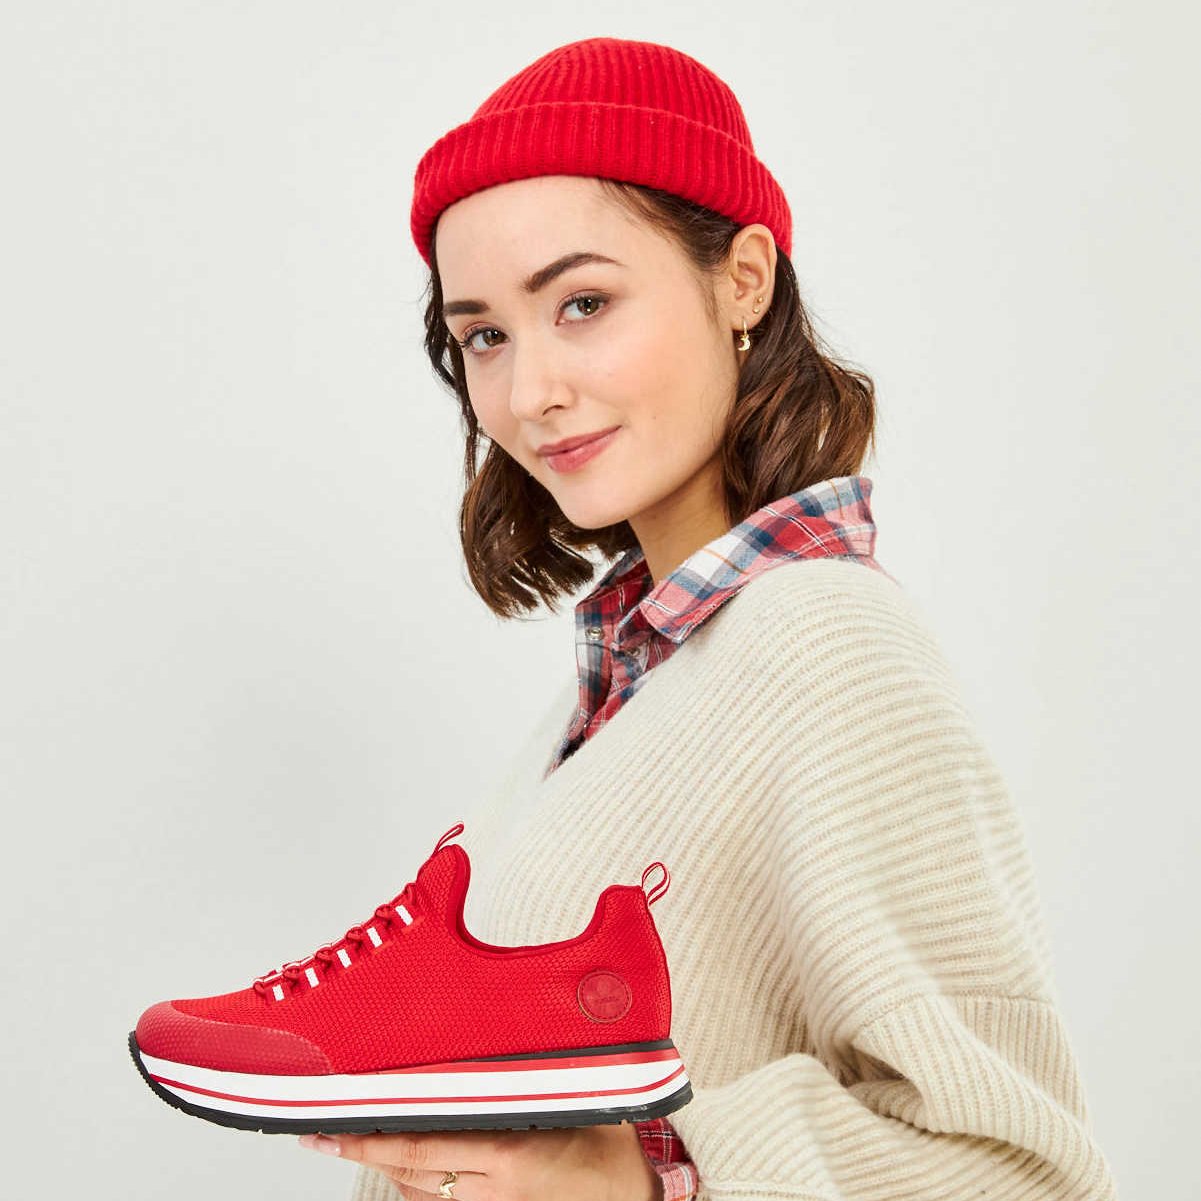 Eine junge Frau hält einen roten Schuh in das Bild